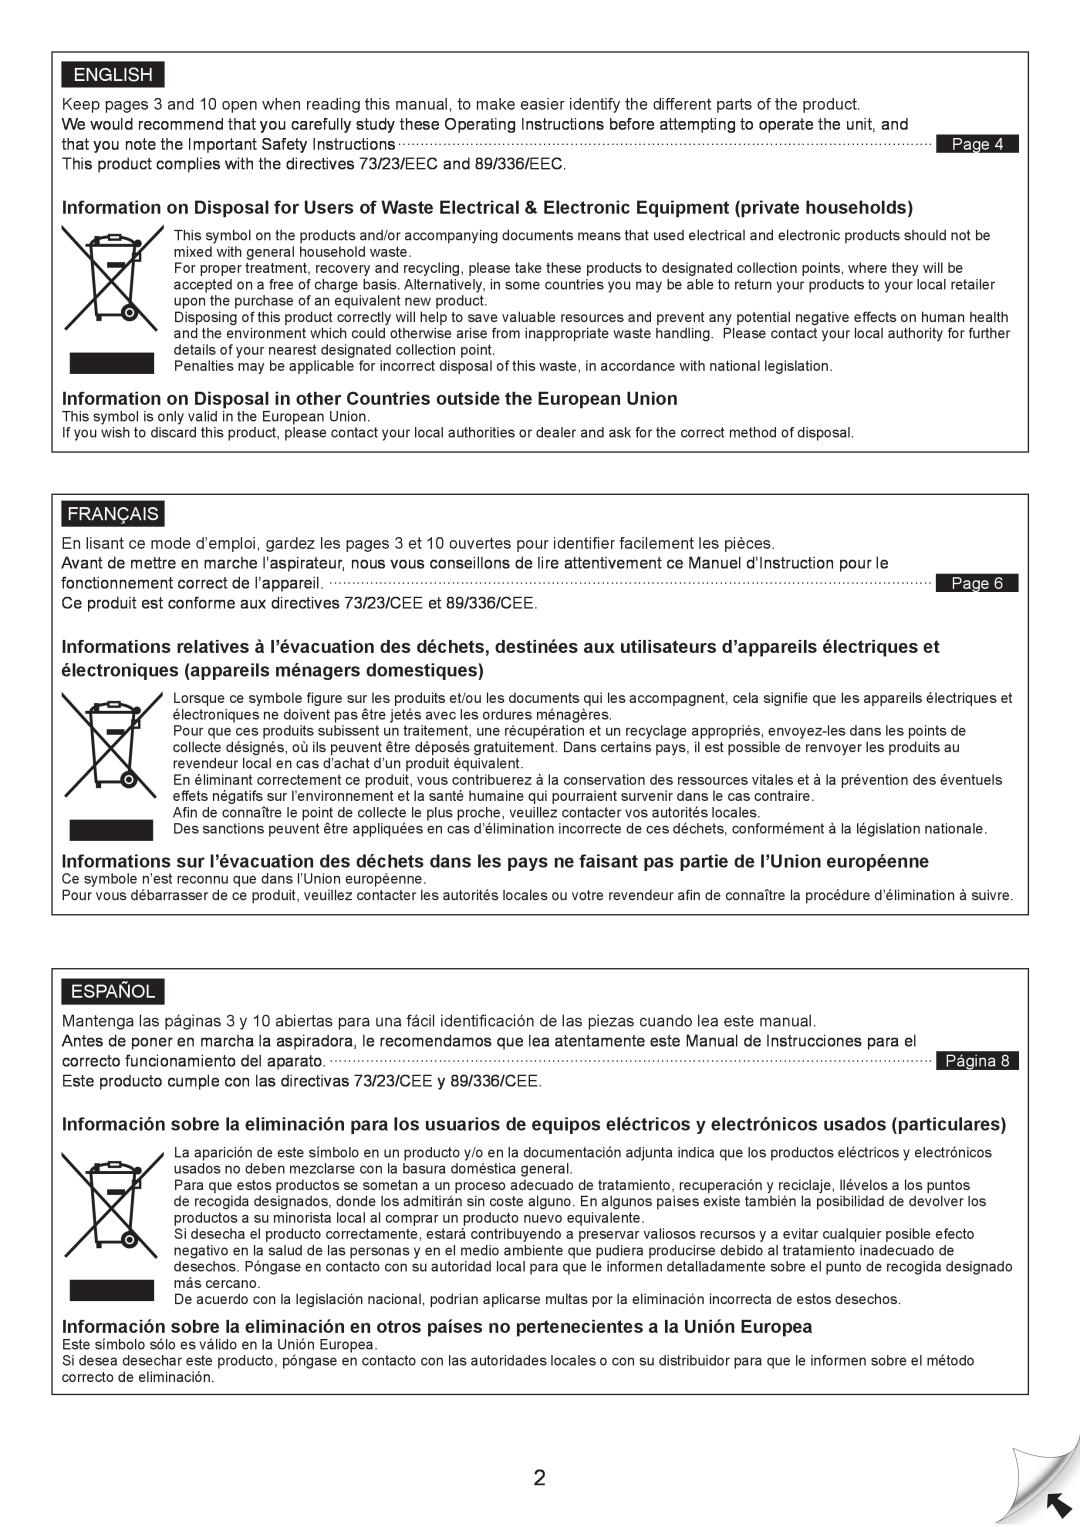 Panasonic MC-CG467 manual électroniques appareils ménagers domestiques, English, Français, Español 